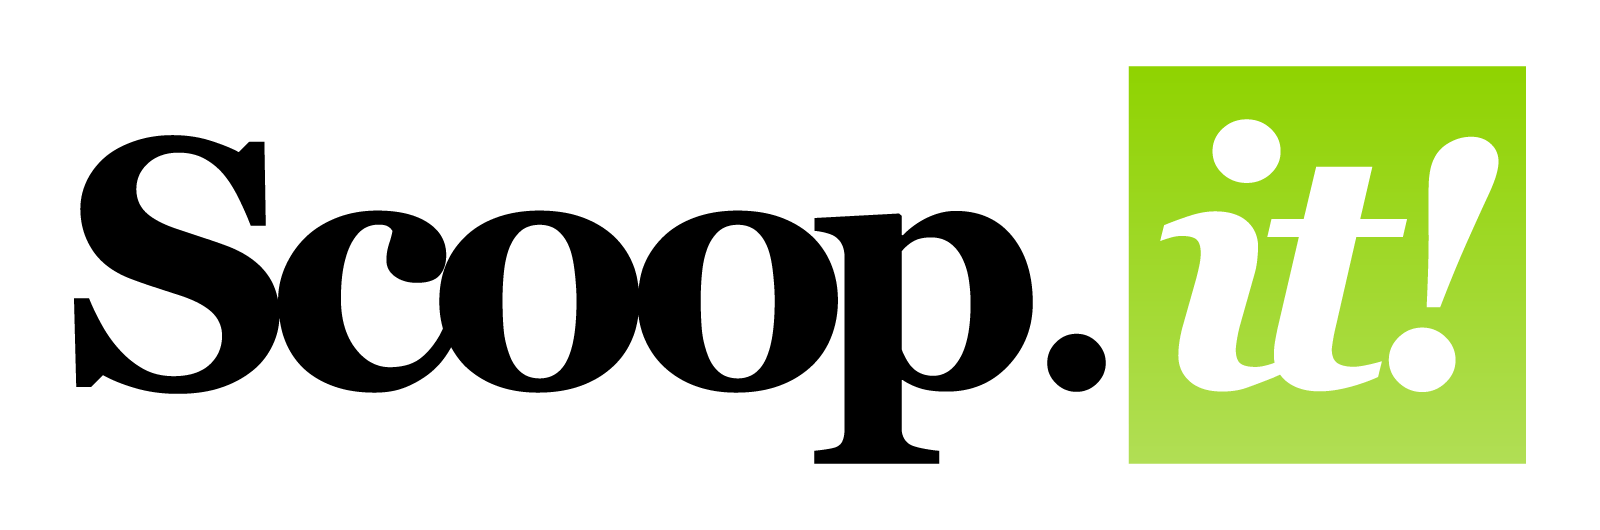 Scoop.it Logo - Just scoop.it